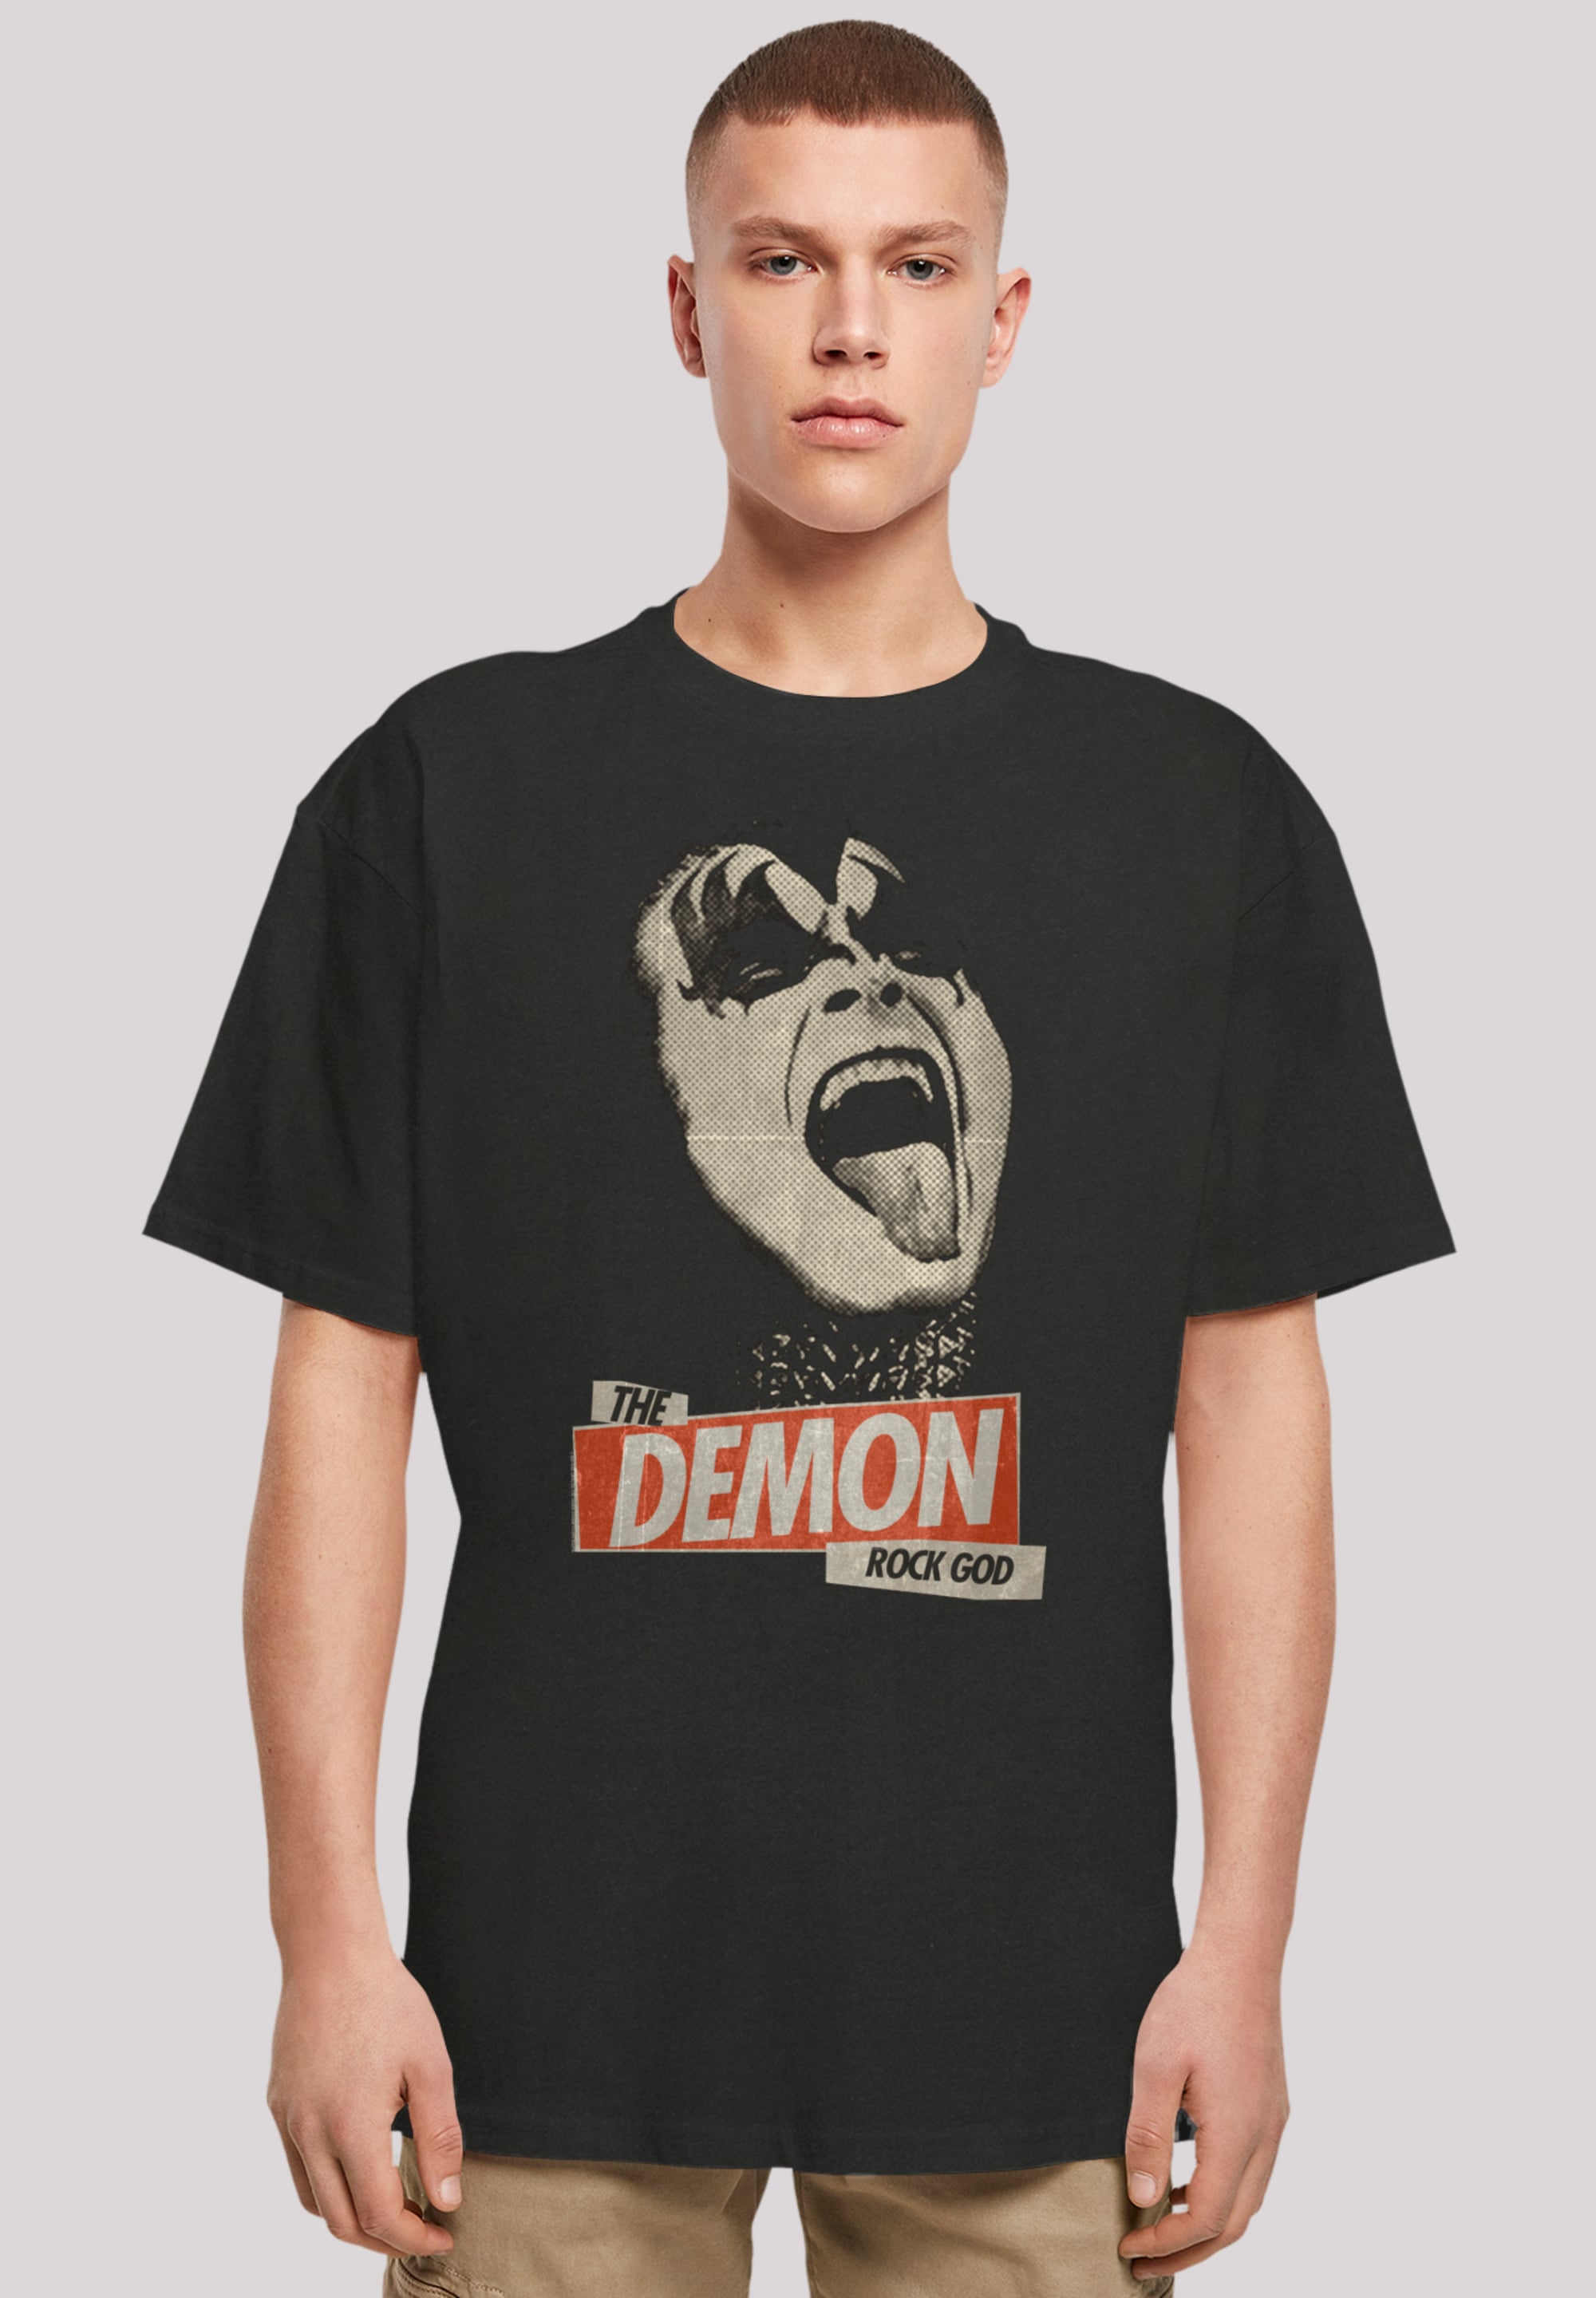 Premium kaufen Qualität »Kiss Hard Demon«, Band F4NT4STIC BAUR | T-Shirt online Rock